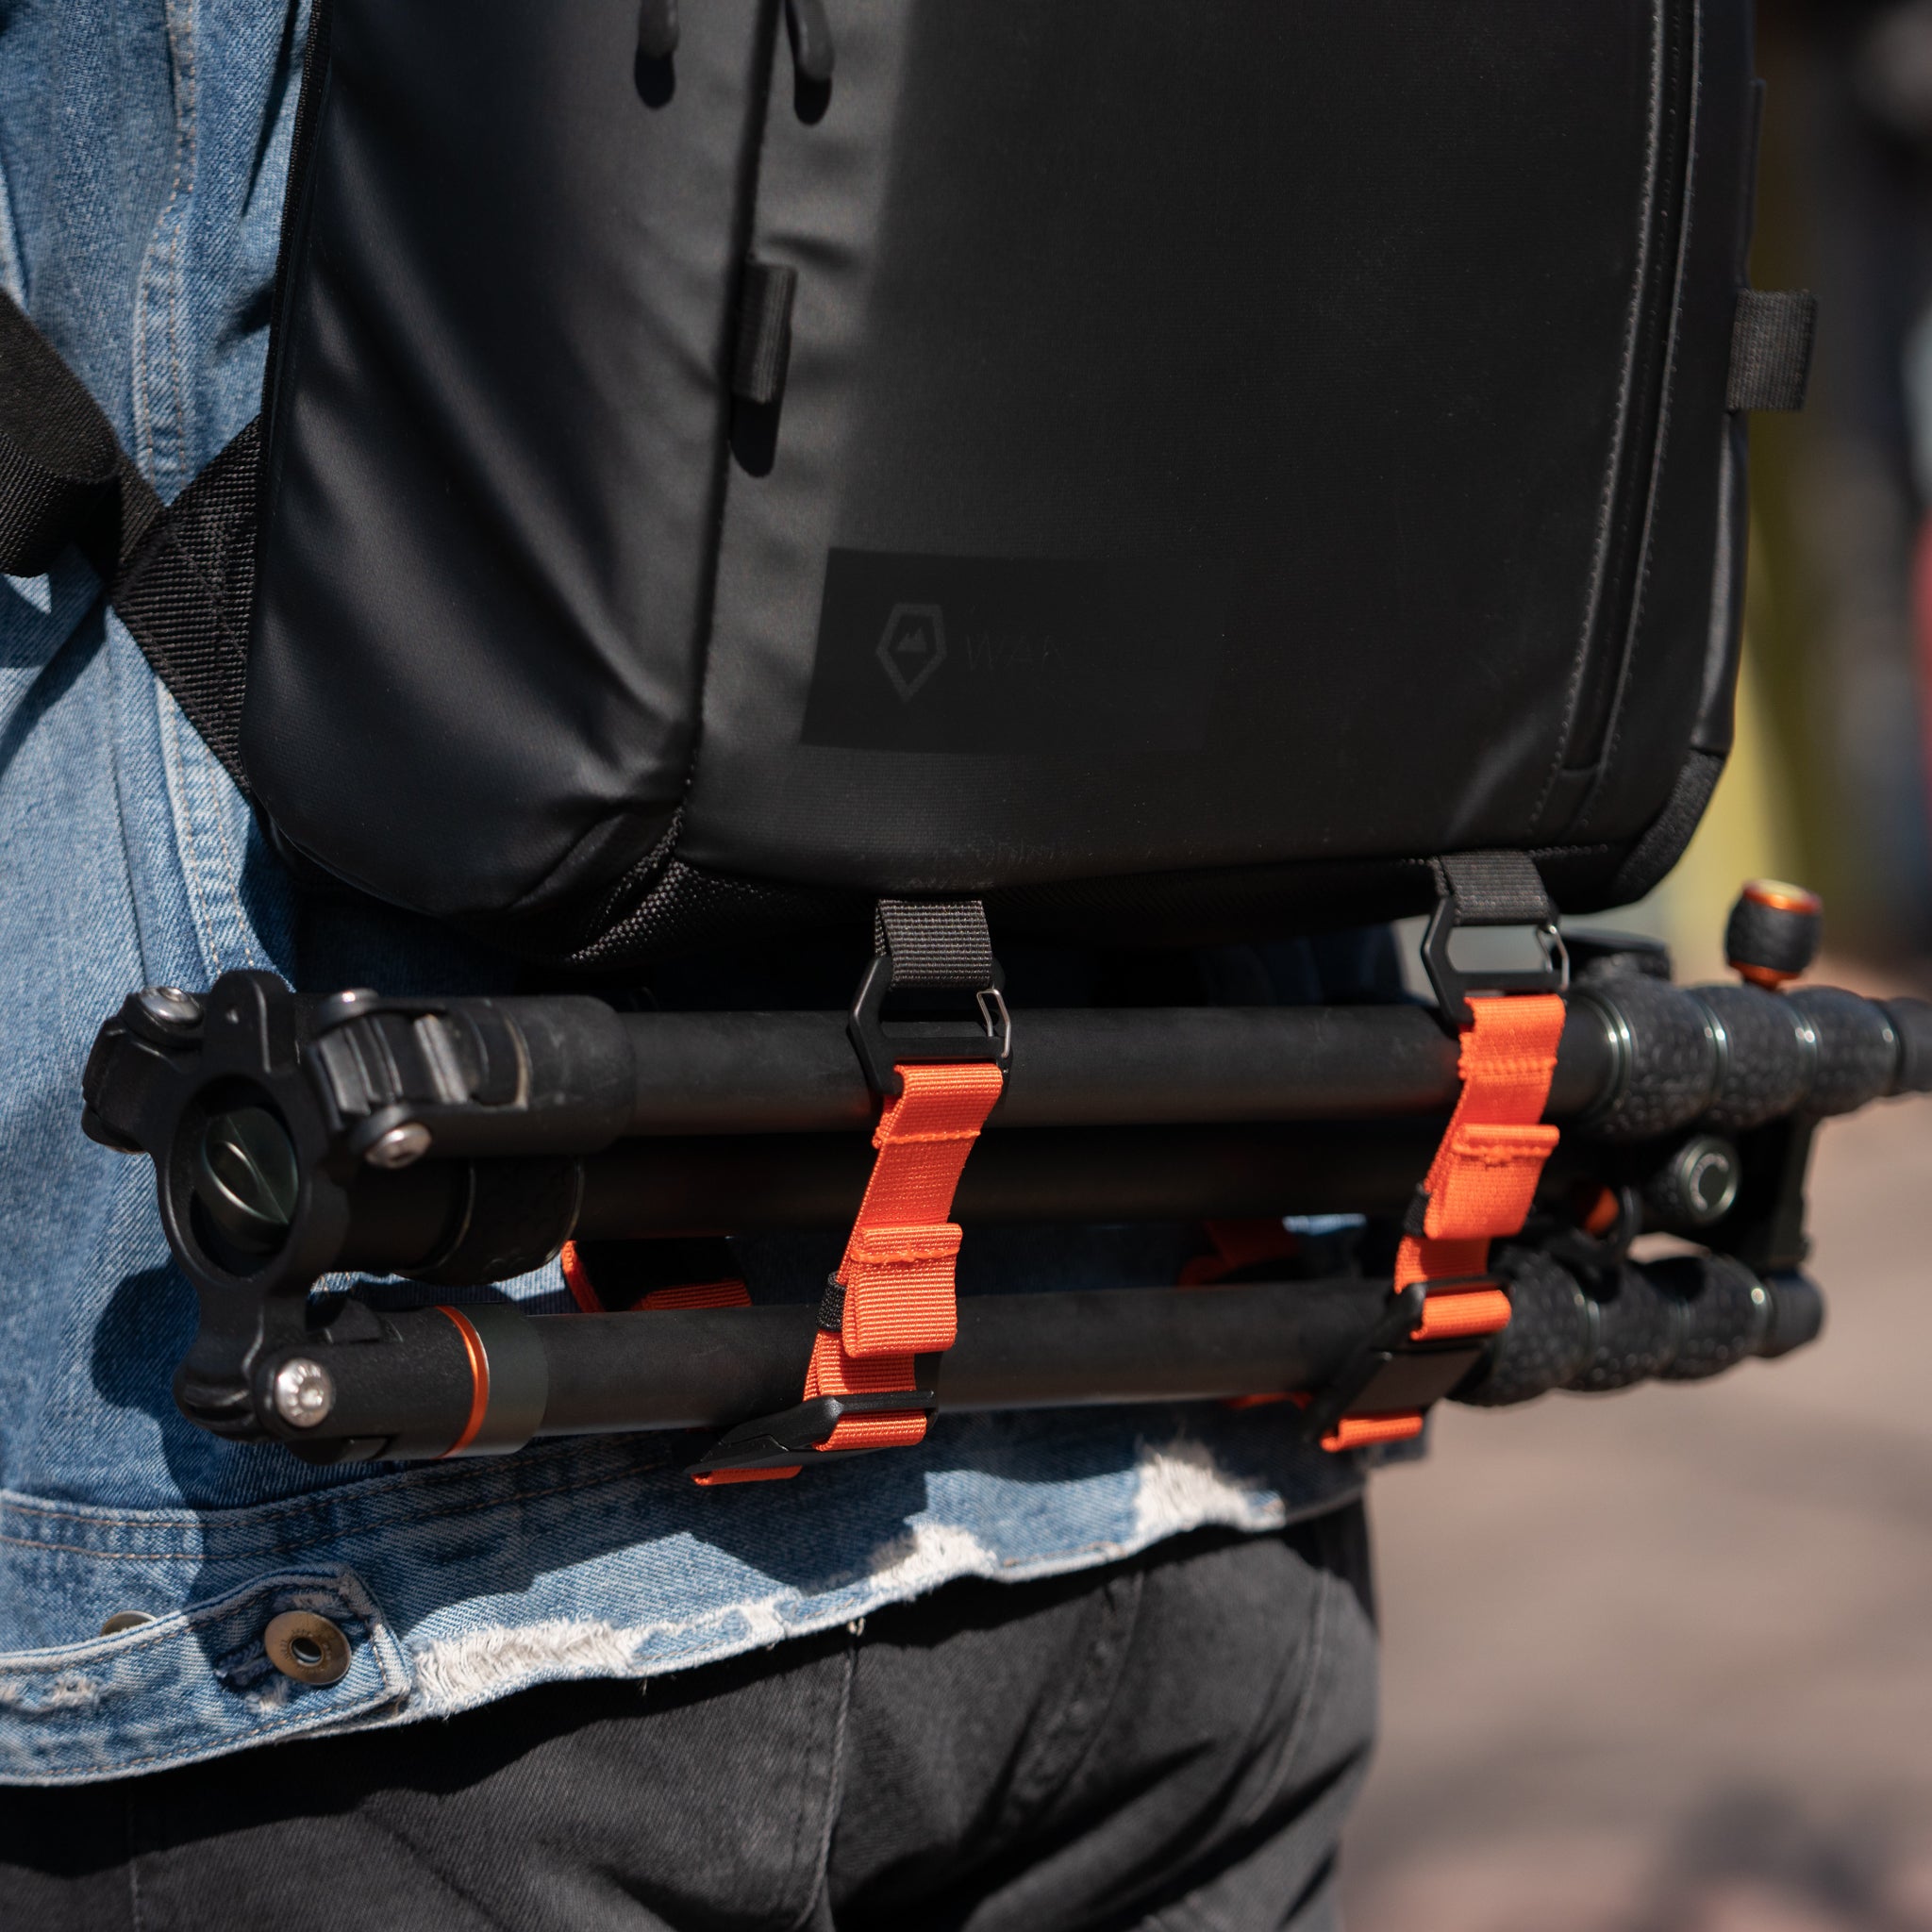 Wandrd PRVKE Lite - rygsæk til fotografering og hverdagsbrug - indbygget camera cube - livsstilsbillede